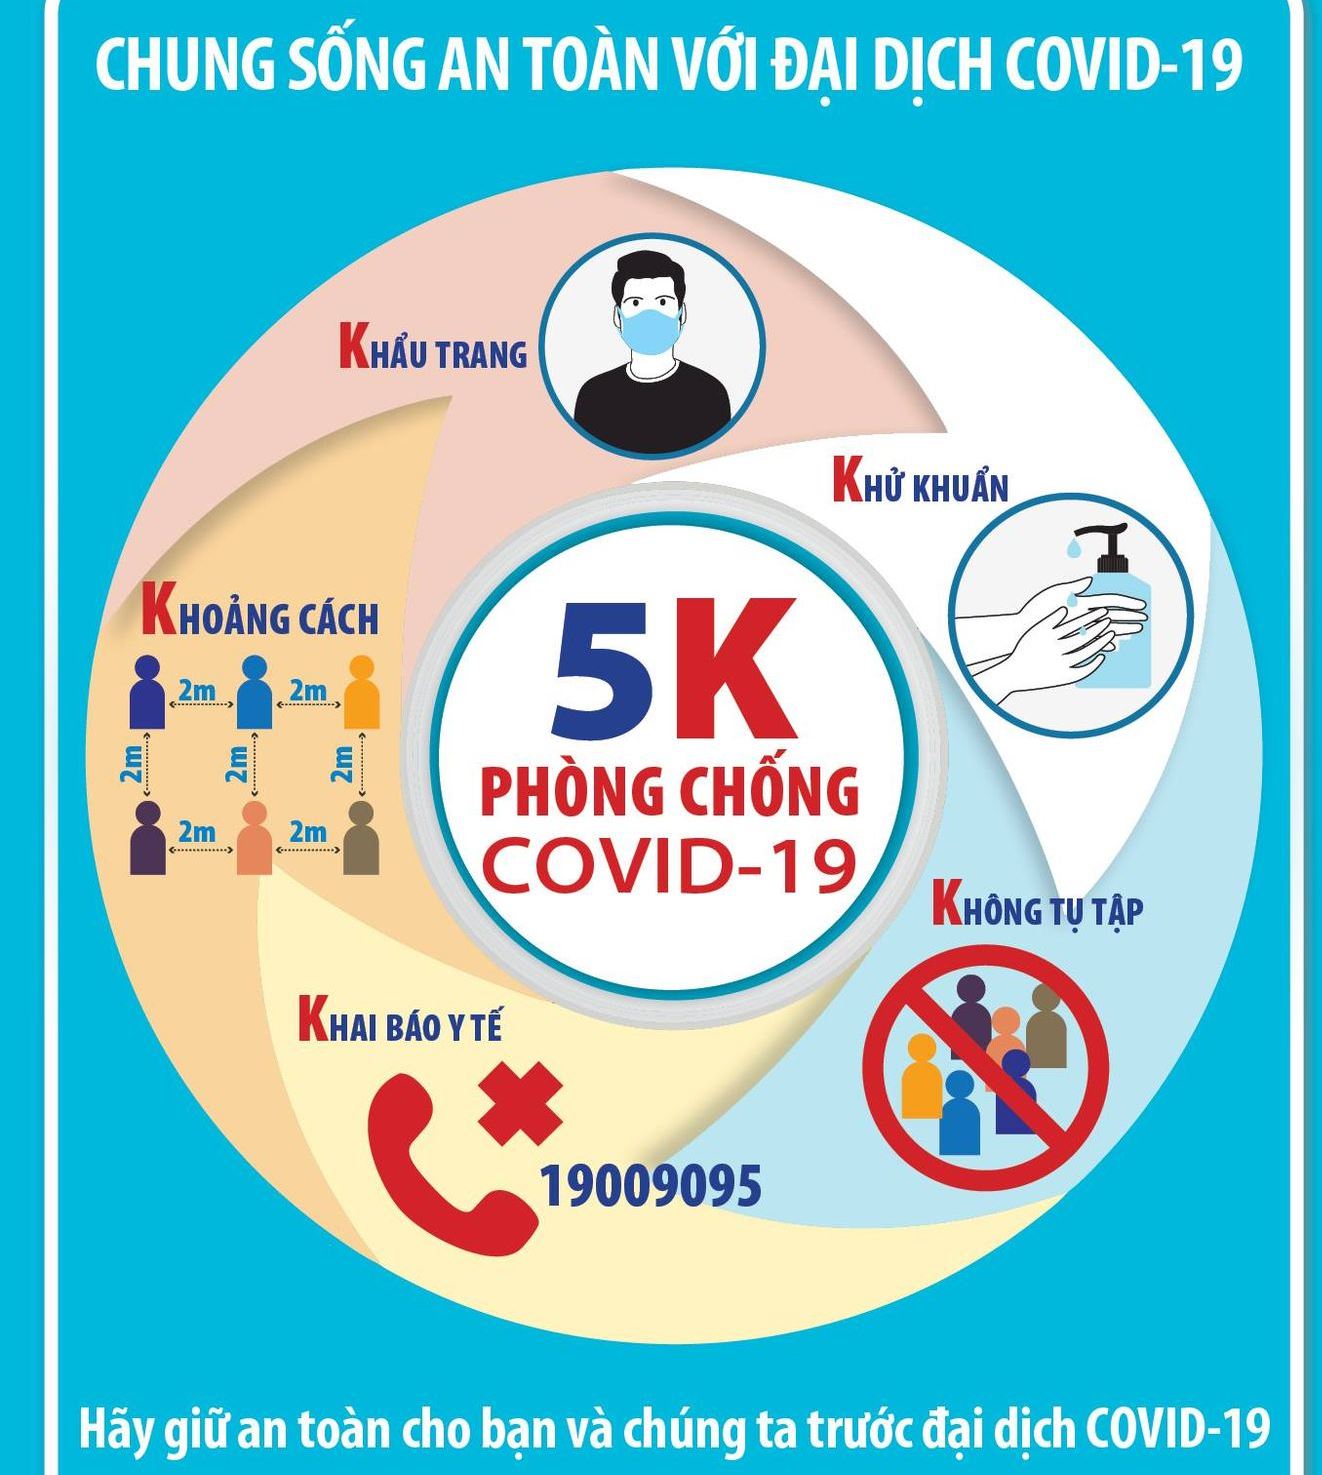 NÓNG: Các ca COVID-19 nhập cảnh vào Việt Nam từ Campuchia đều mang biến thể